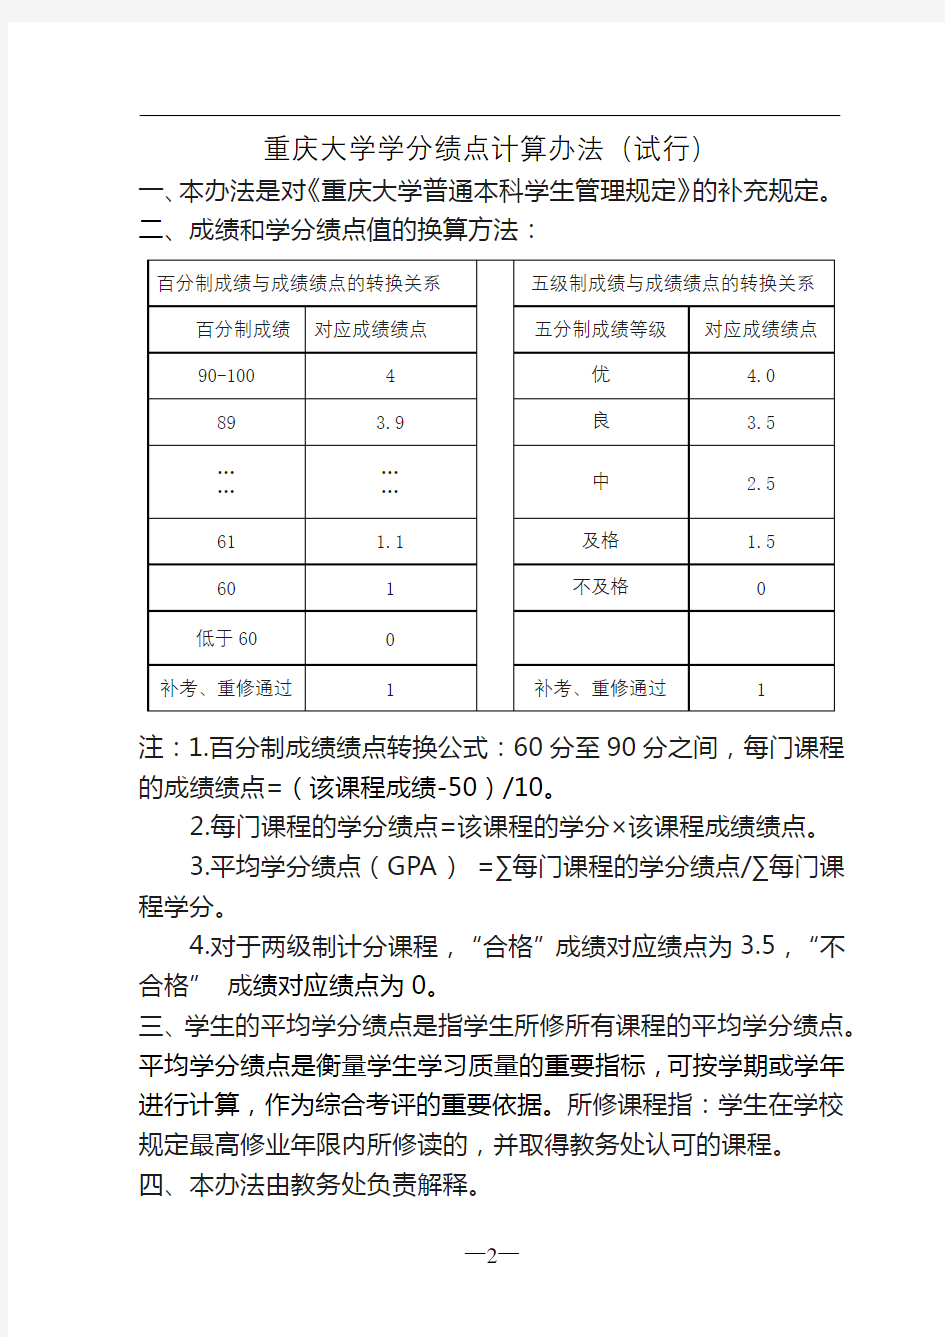 重庆大学学分绩点计算办法(试行)【模板】